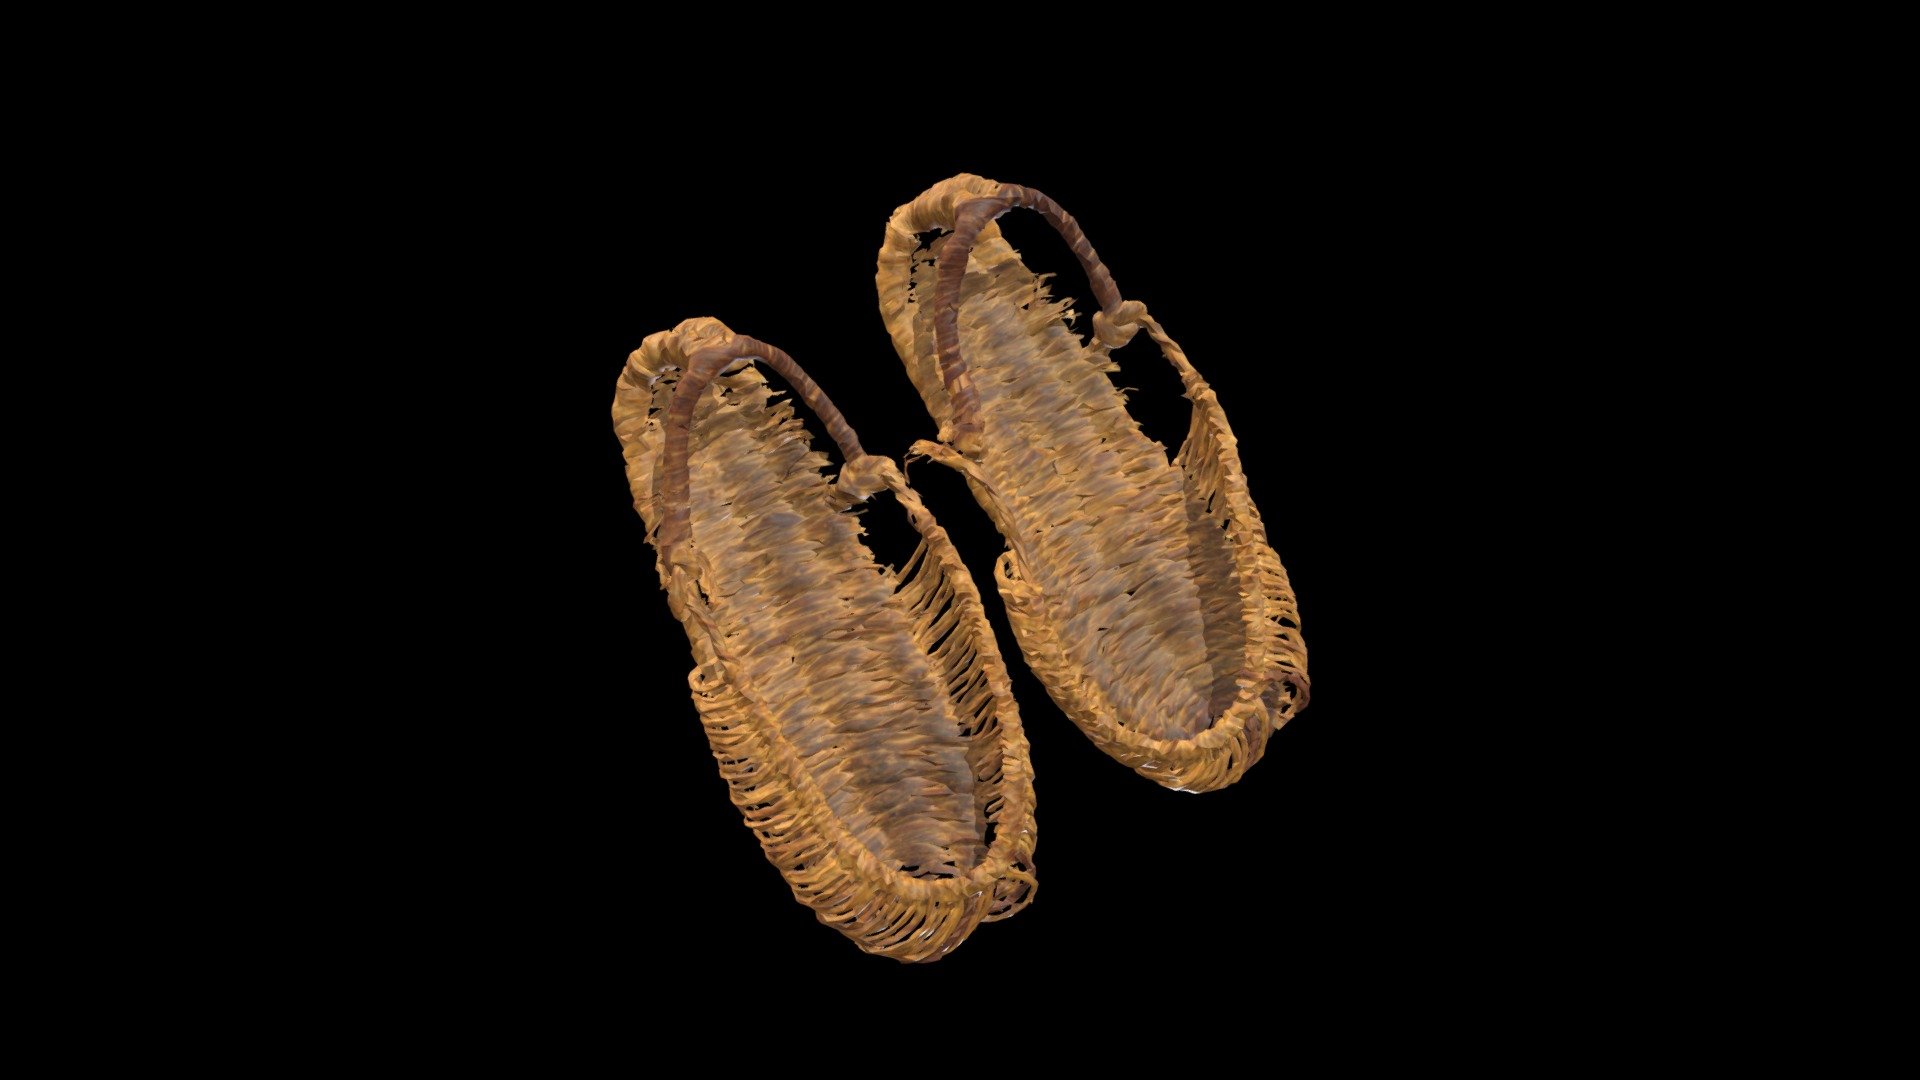 짚신

革履

민속품-민속품

한국-조선

초제-볏짚

길이:27, 옆너비:10

짚으로 만든 신발 - 짚신 - 3D model by chungju_museum 3d model